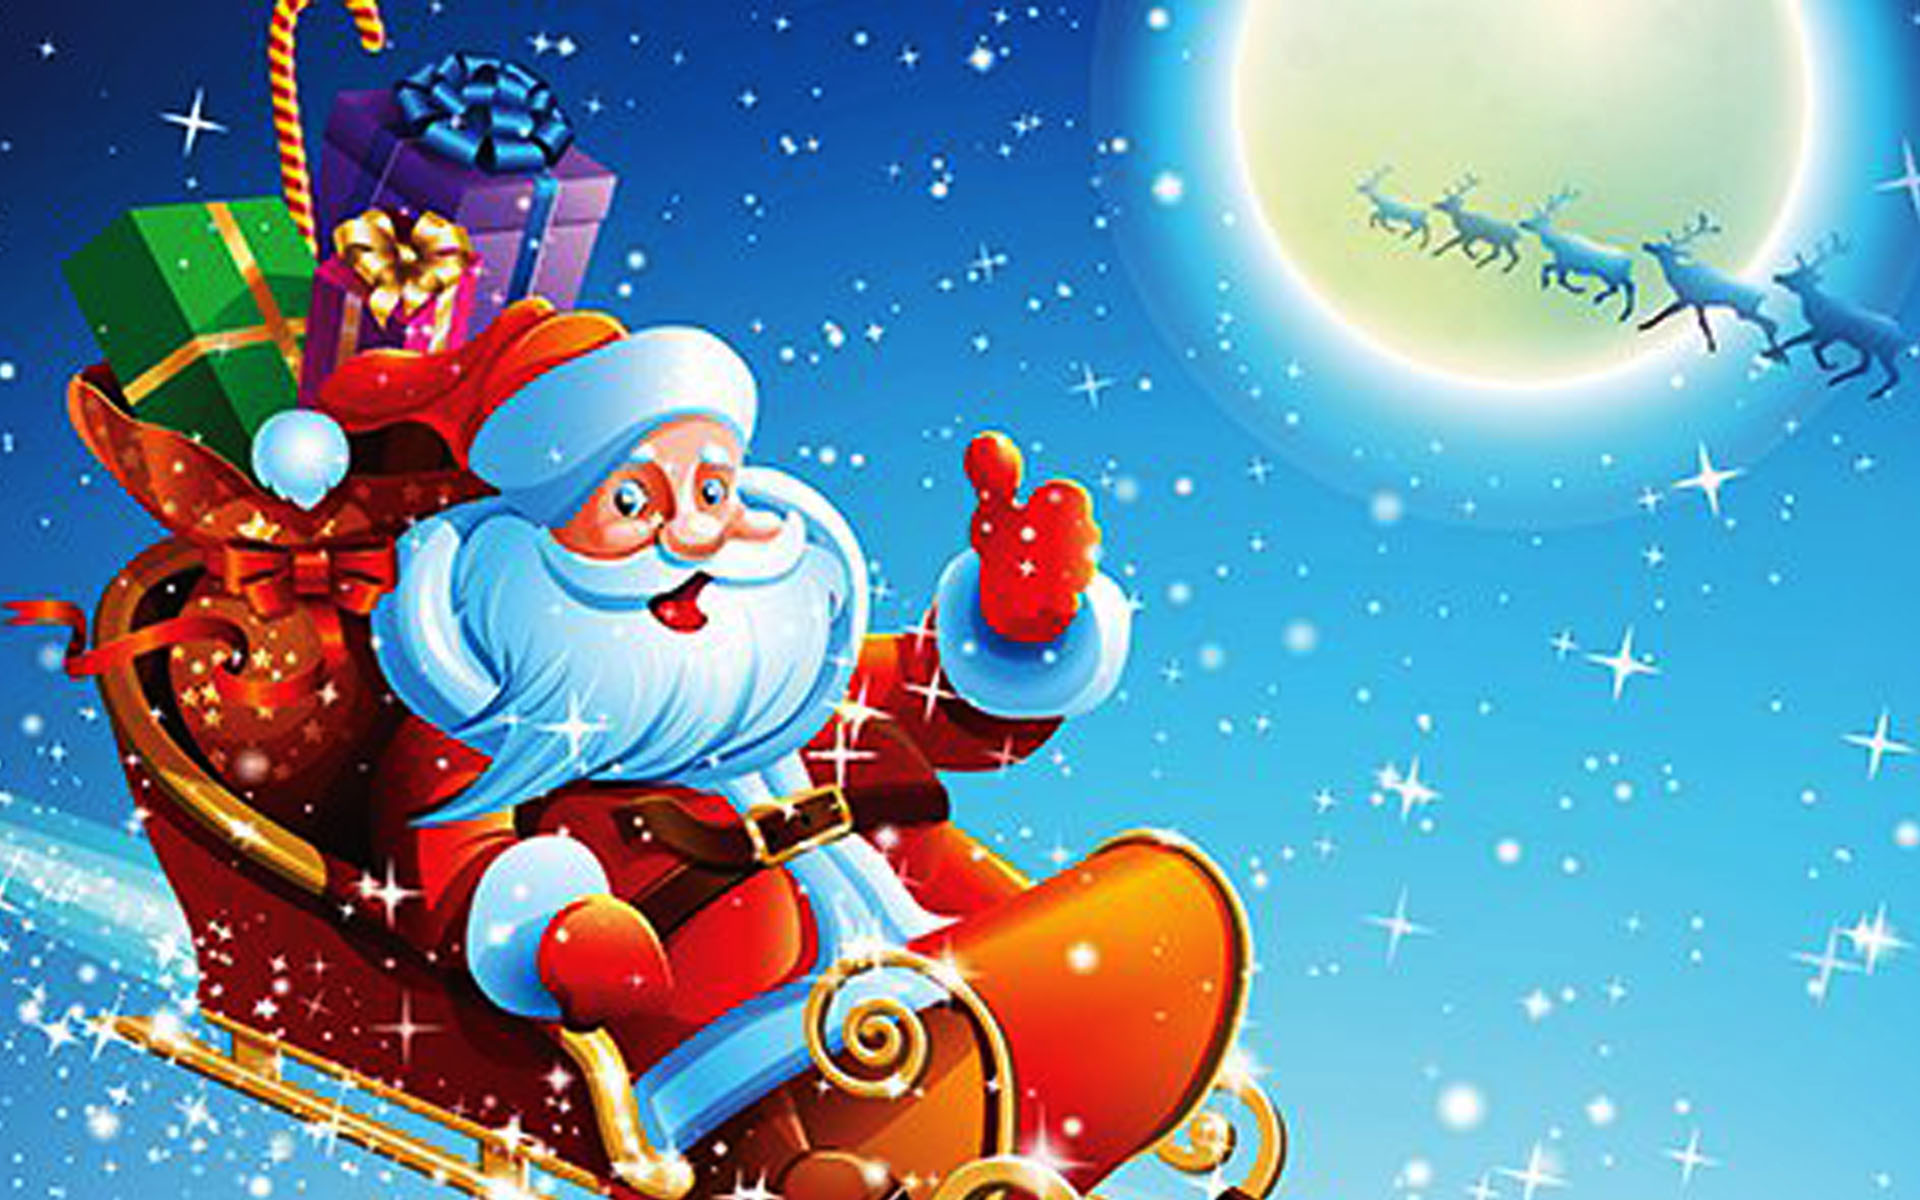 Historia Papa Noel - Santa Claus In A Sleigh (#1122948) - HD Wallpaper ...